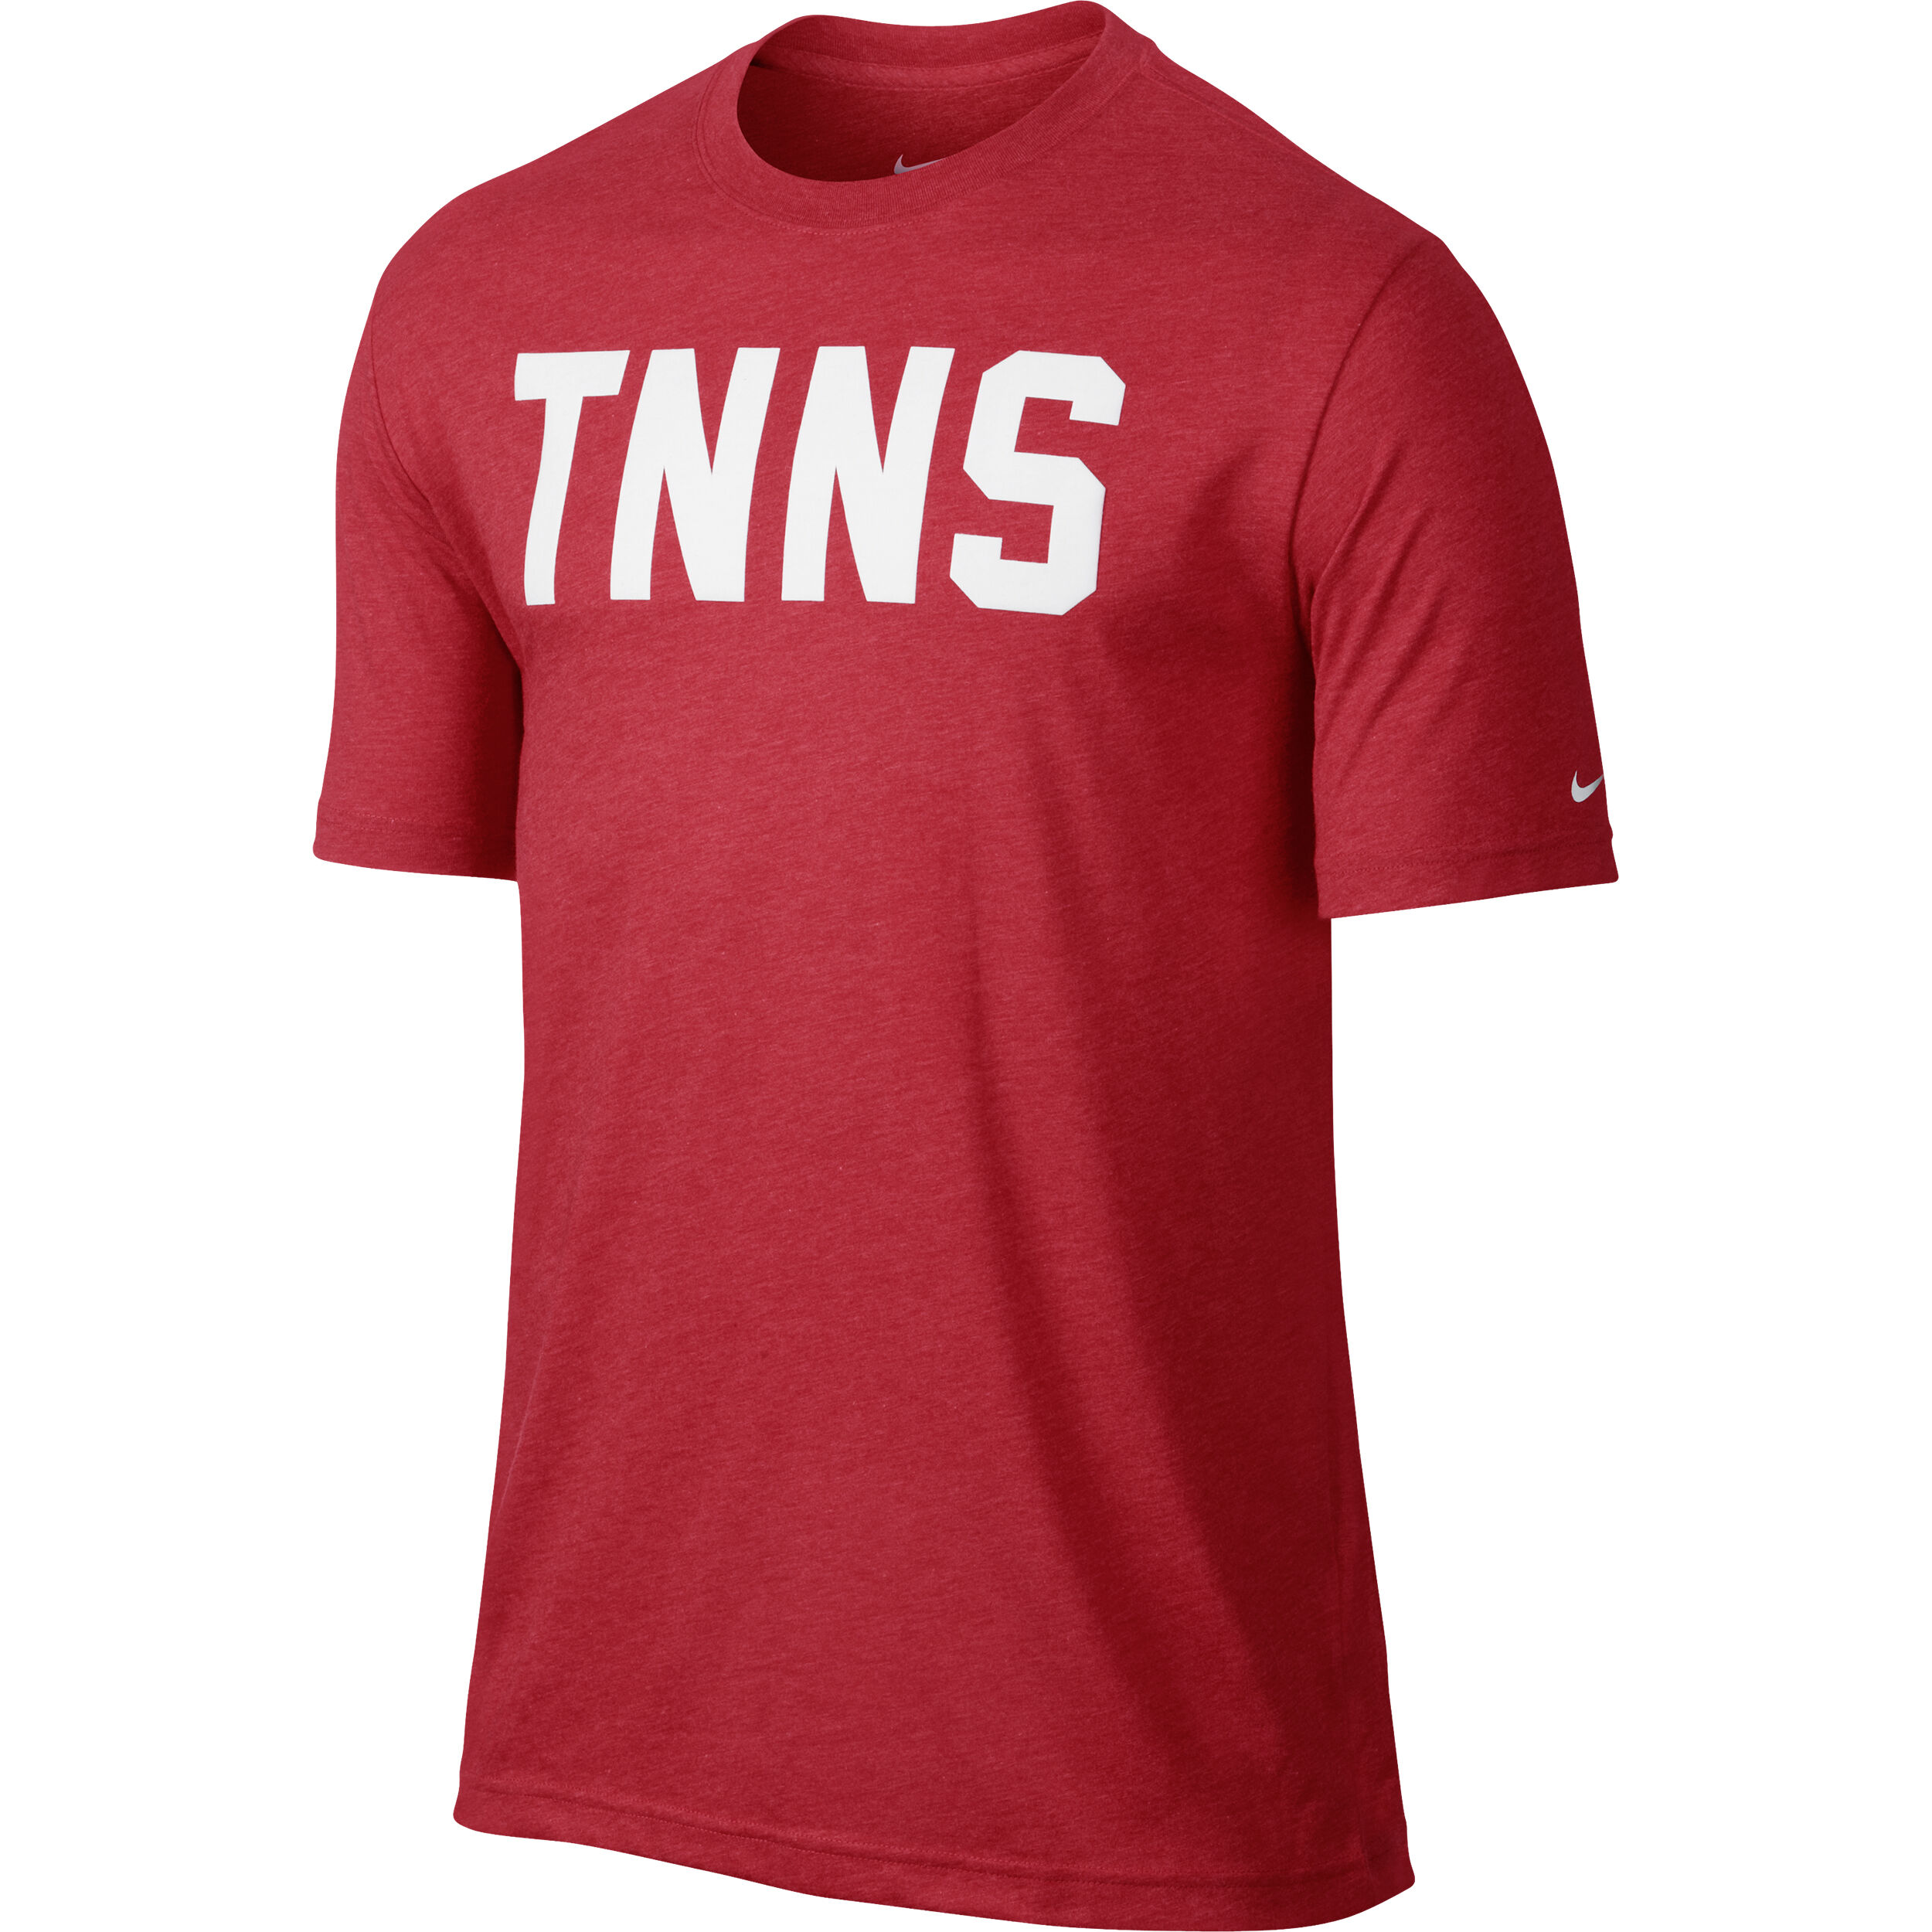 buy Nike Tnns T-Shirt Men - Red online 